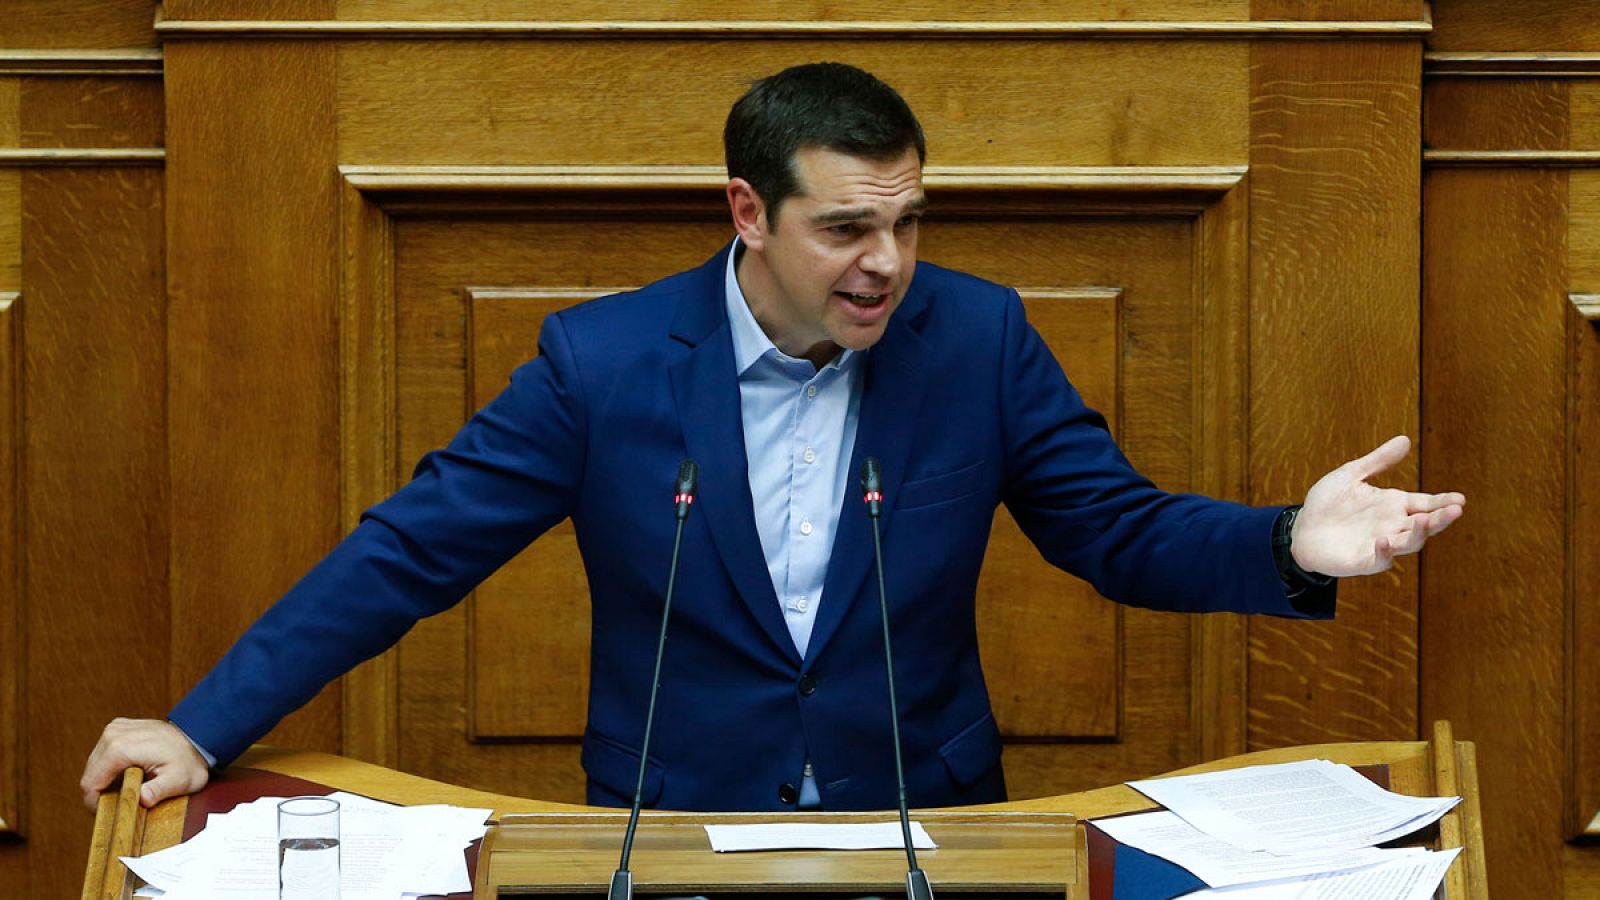 El primer ministro de Grecia, Alexis Tsipras, durante su discurso antes de la votación de la moción de censura.